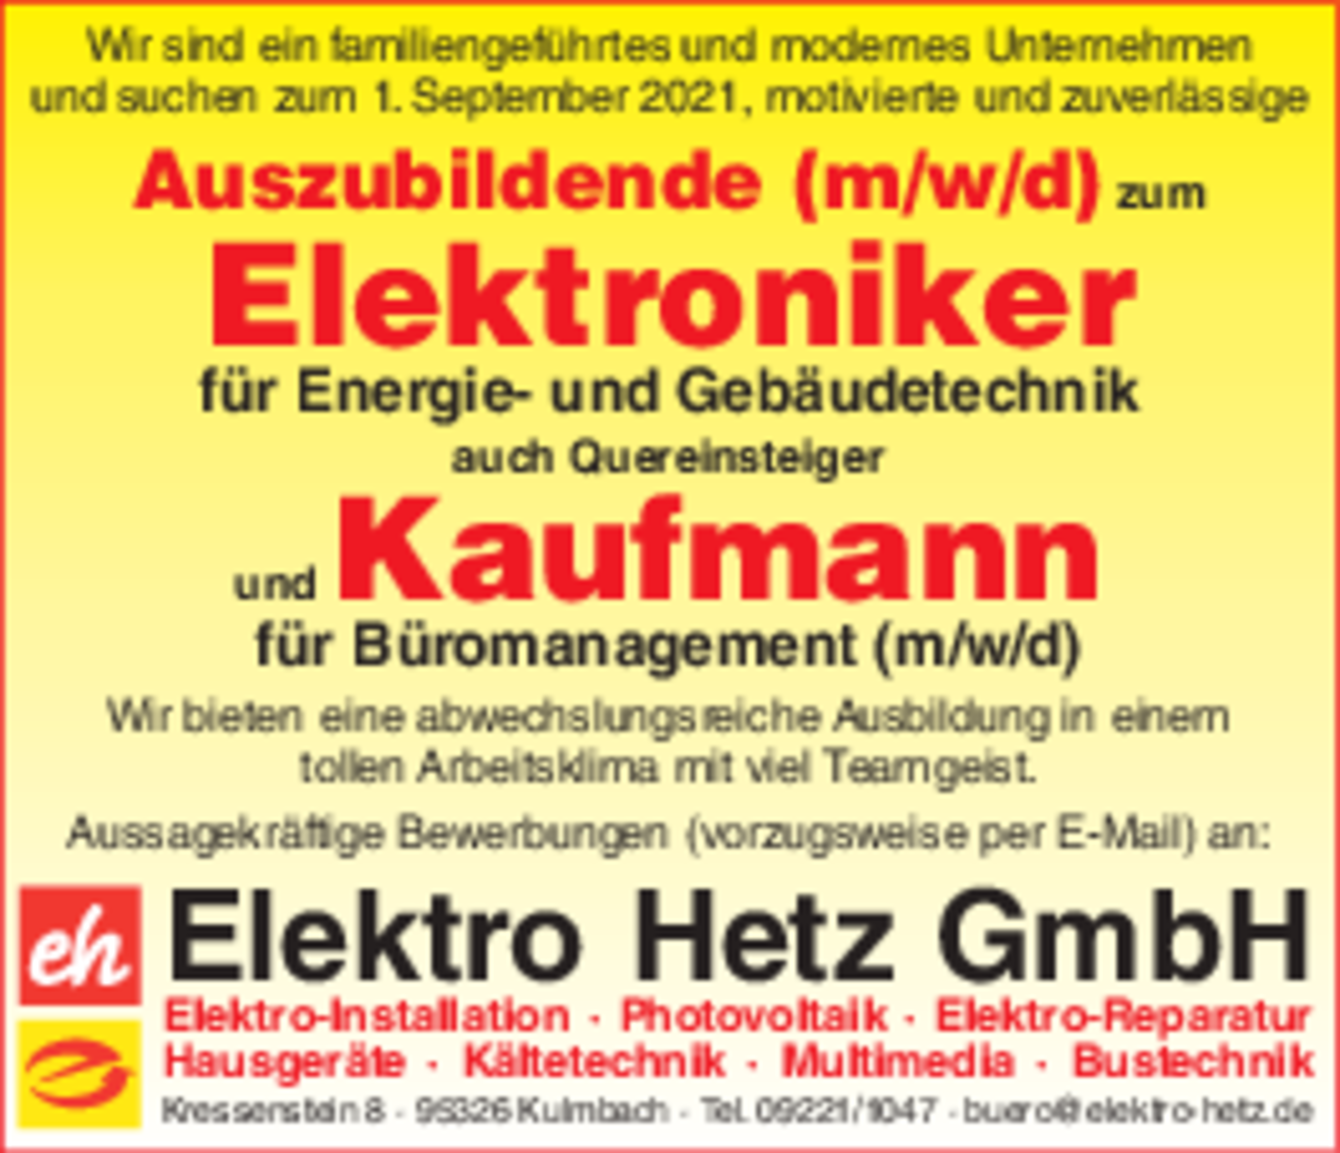 Ausbildung bei Elektro Hetz GmbH in Kulmbach